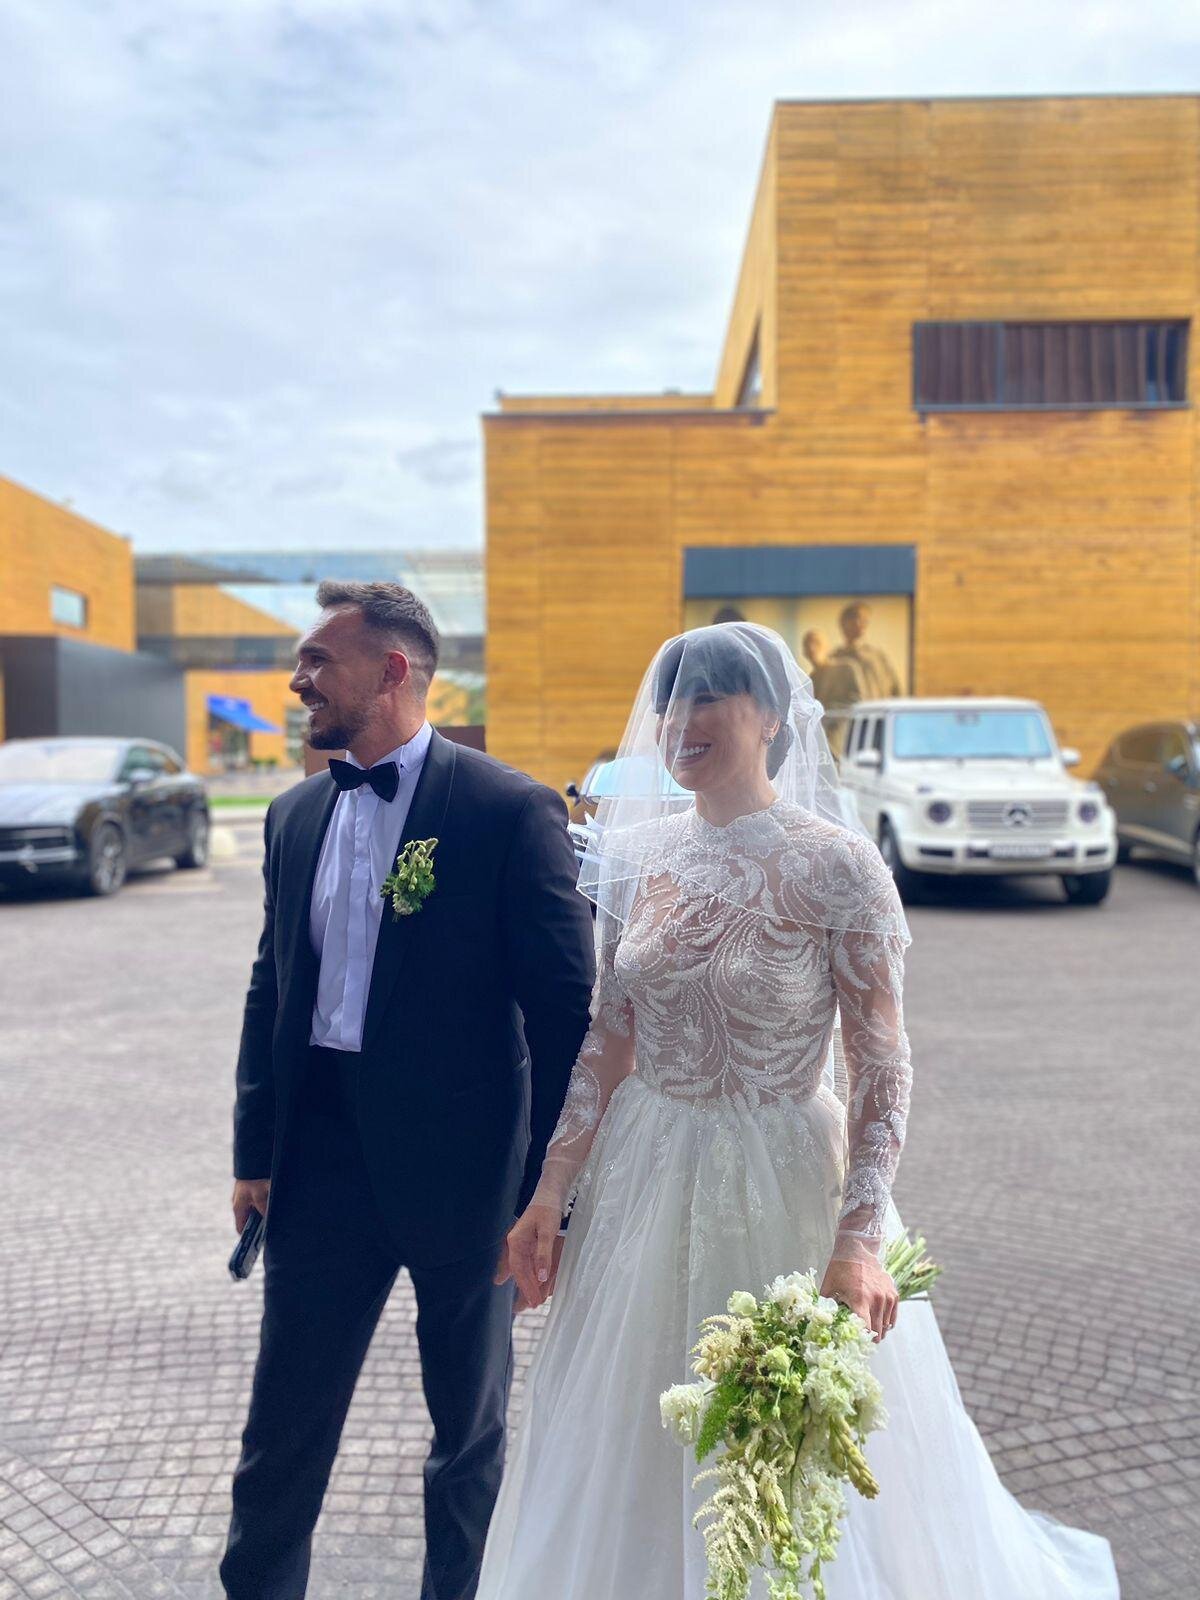 Участница Дом-2 Нелли Ермолаева в очередной раз вышла замуж. Фото со свадьбы, похожей на похороны